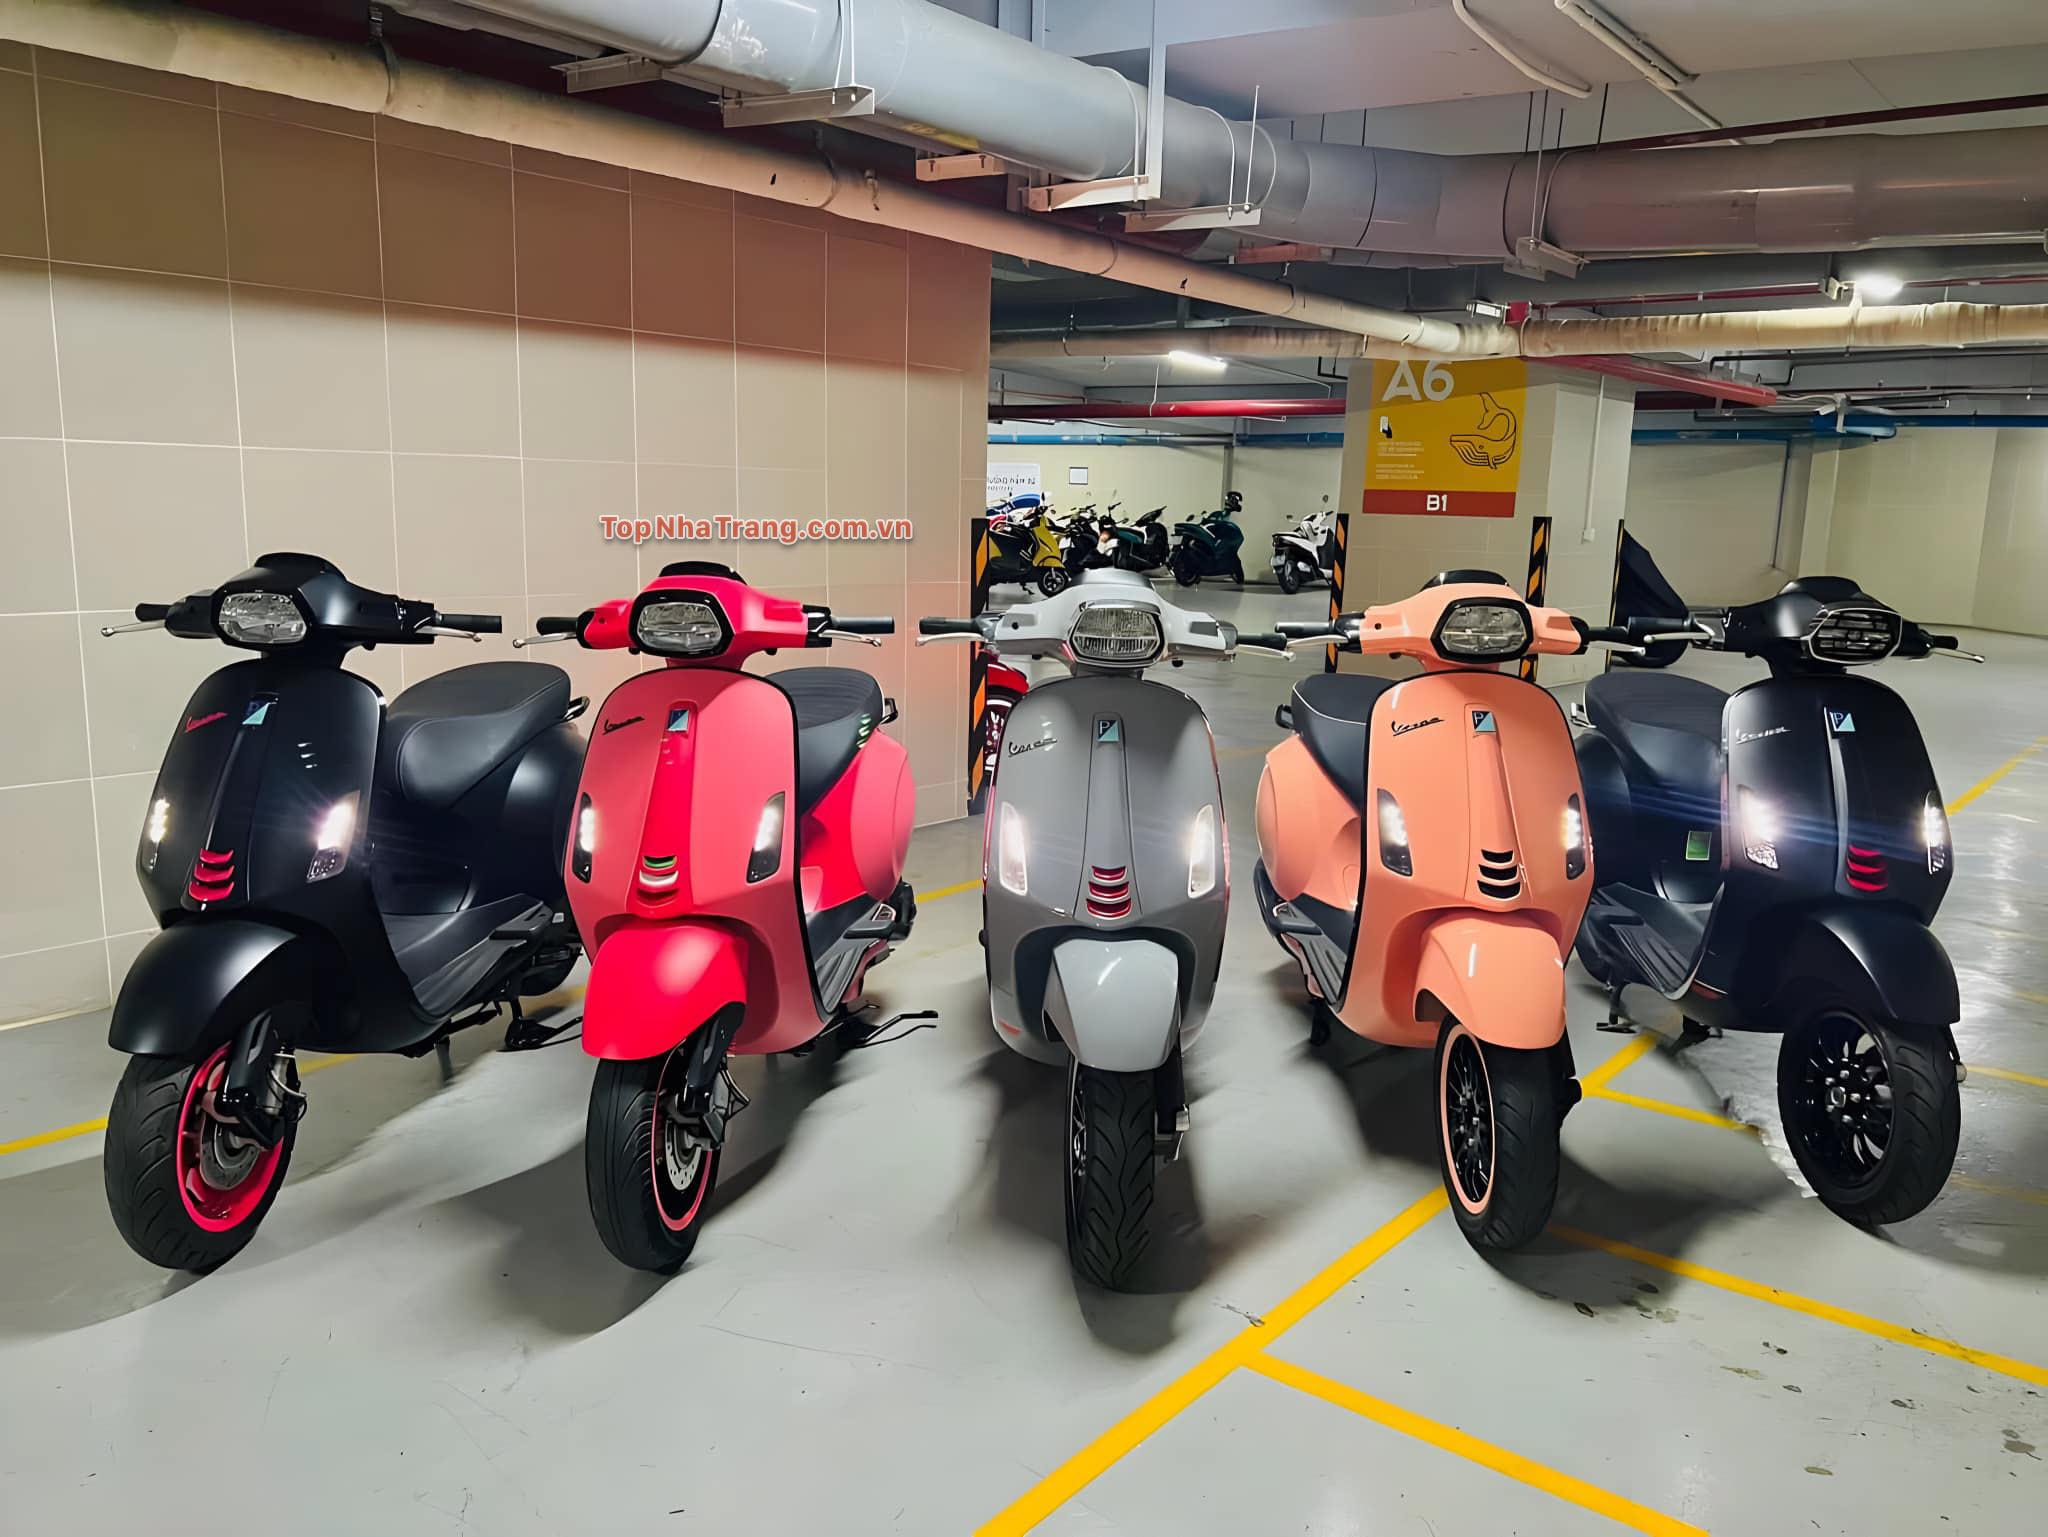 Thuê xe máy VIP Nha Trang – Chuyên cho thuê xe máy cao cấp